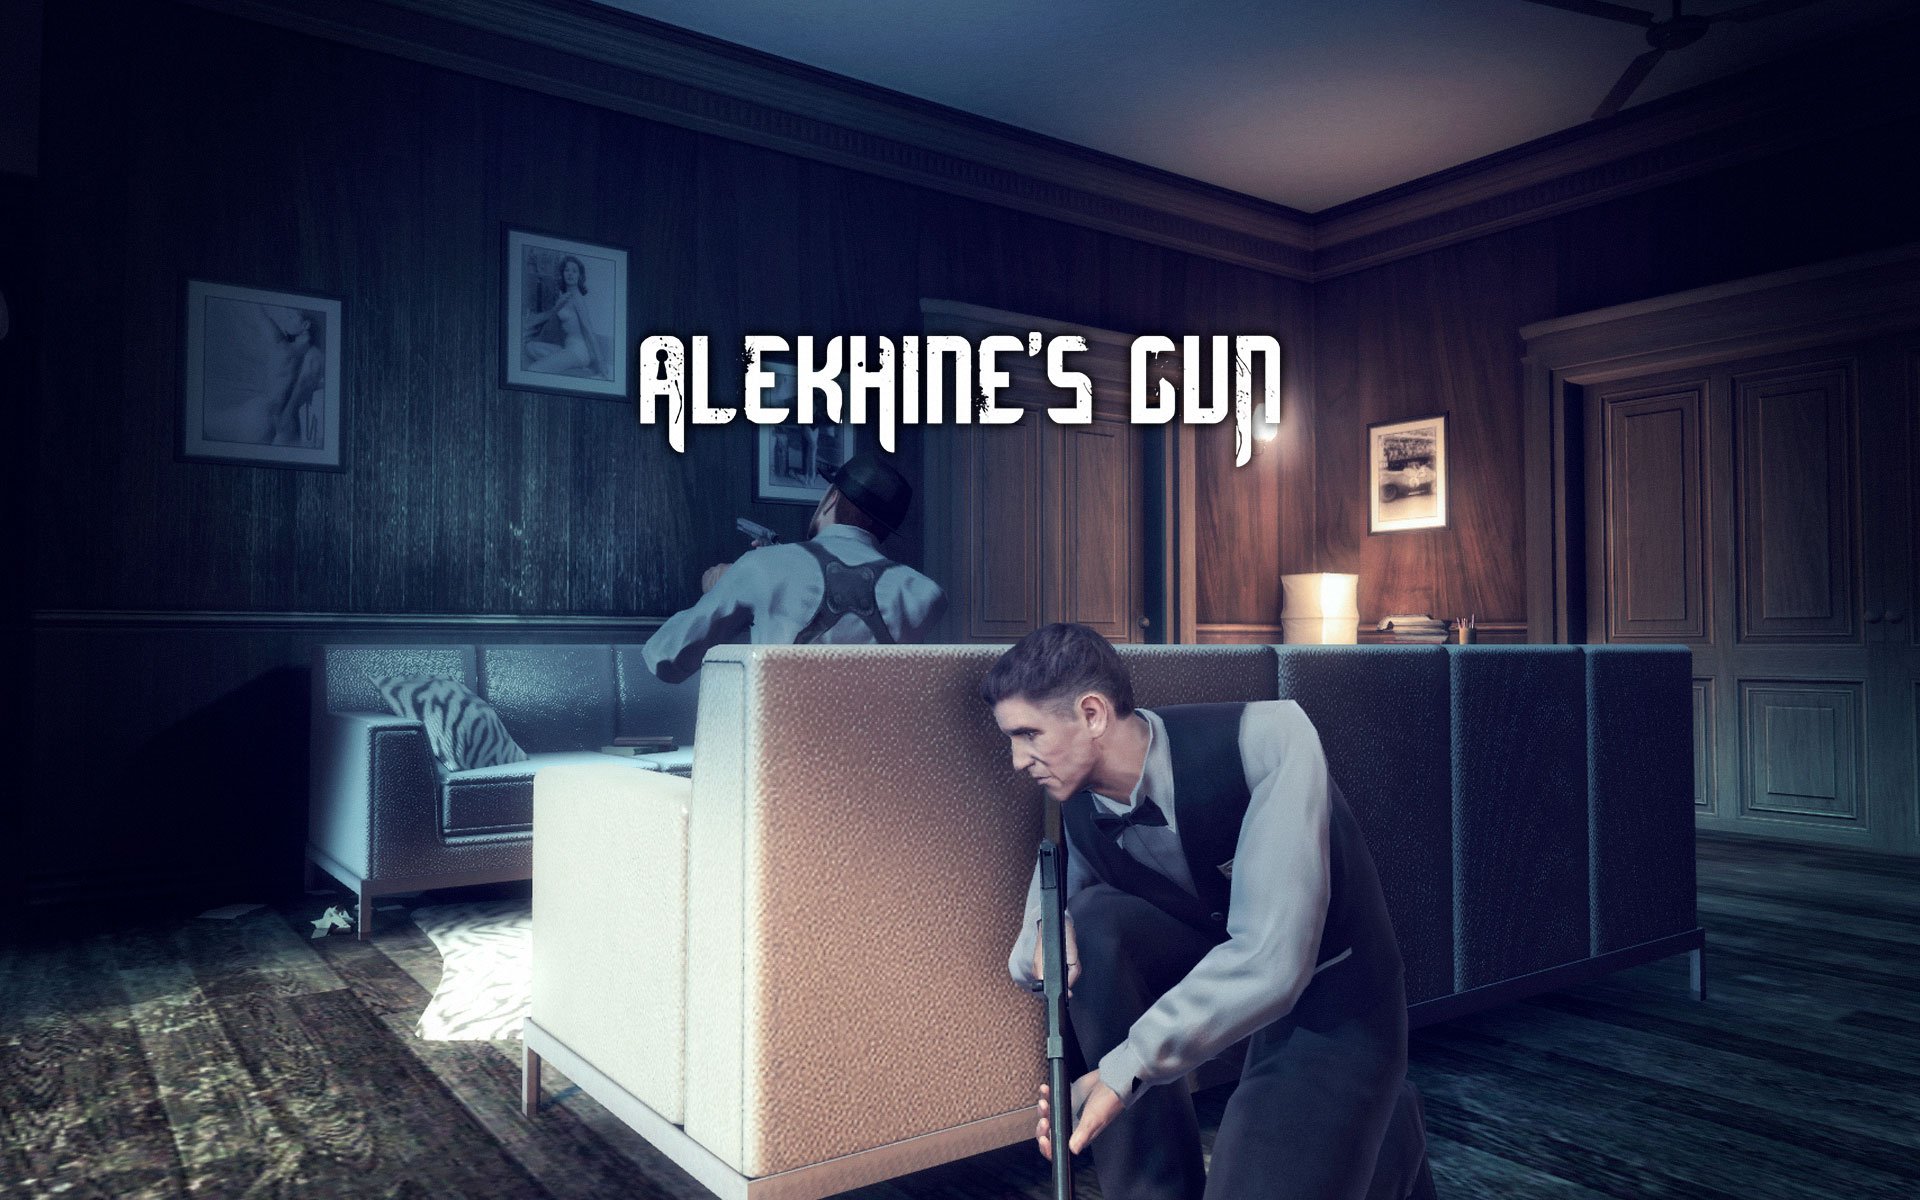 Alekhine s gun. Alekhine's Gun красный дракона. Alekhines Gun игра. Alekhine's Gun обои. Alekhine's Gun костюм массажиста.